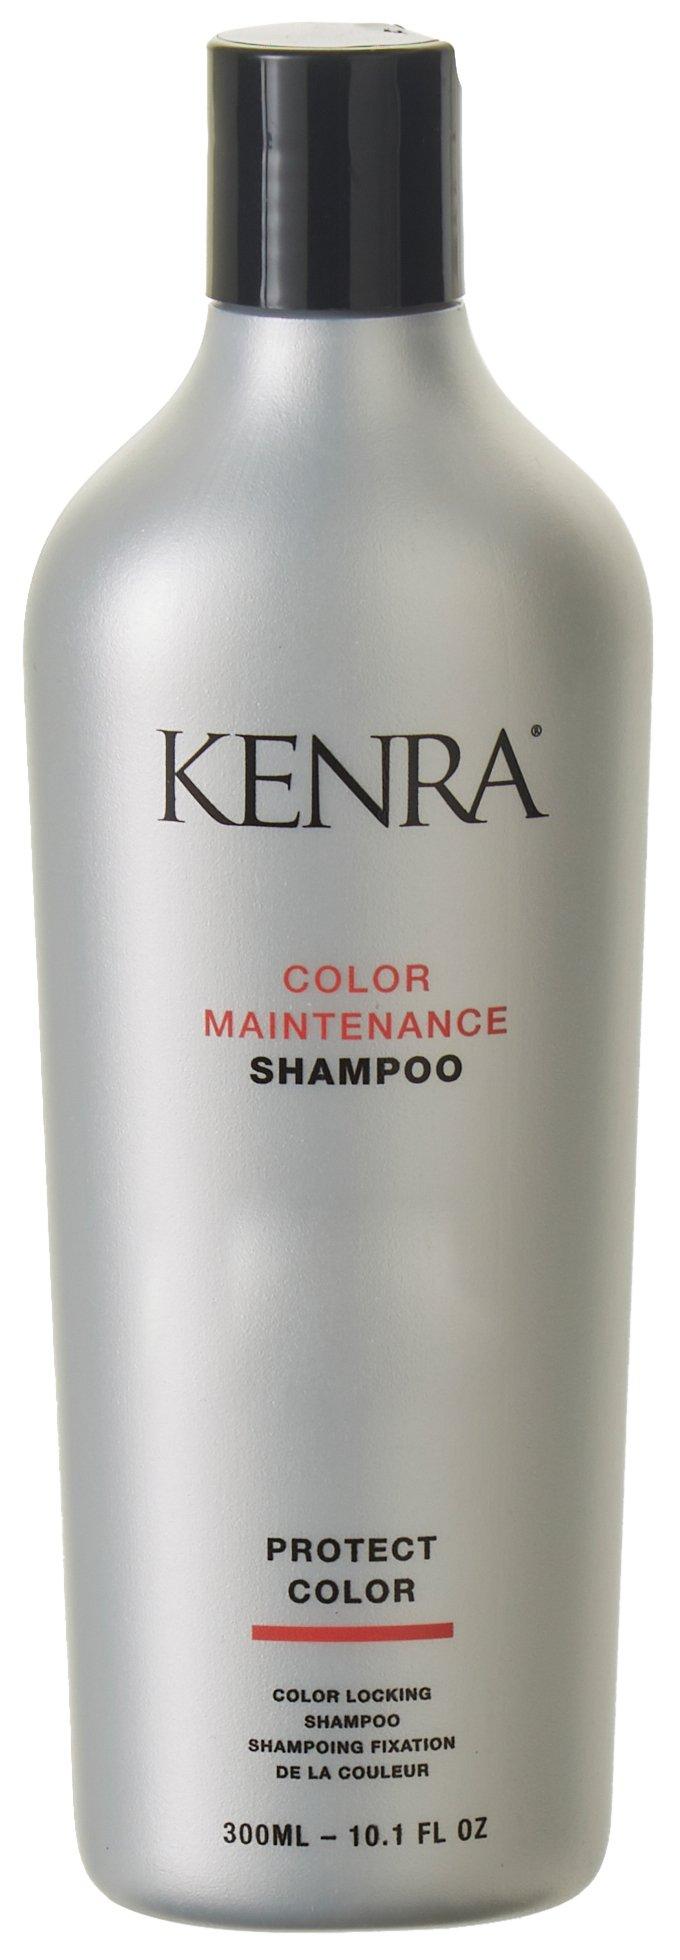 Color Maintenance Shampoo 10.1 Fl. Oz.